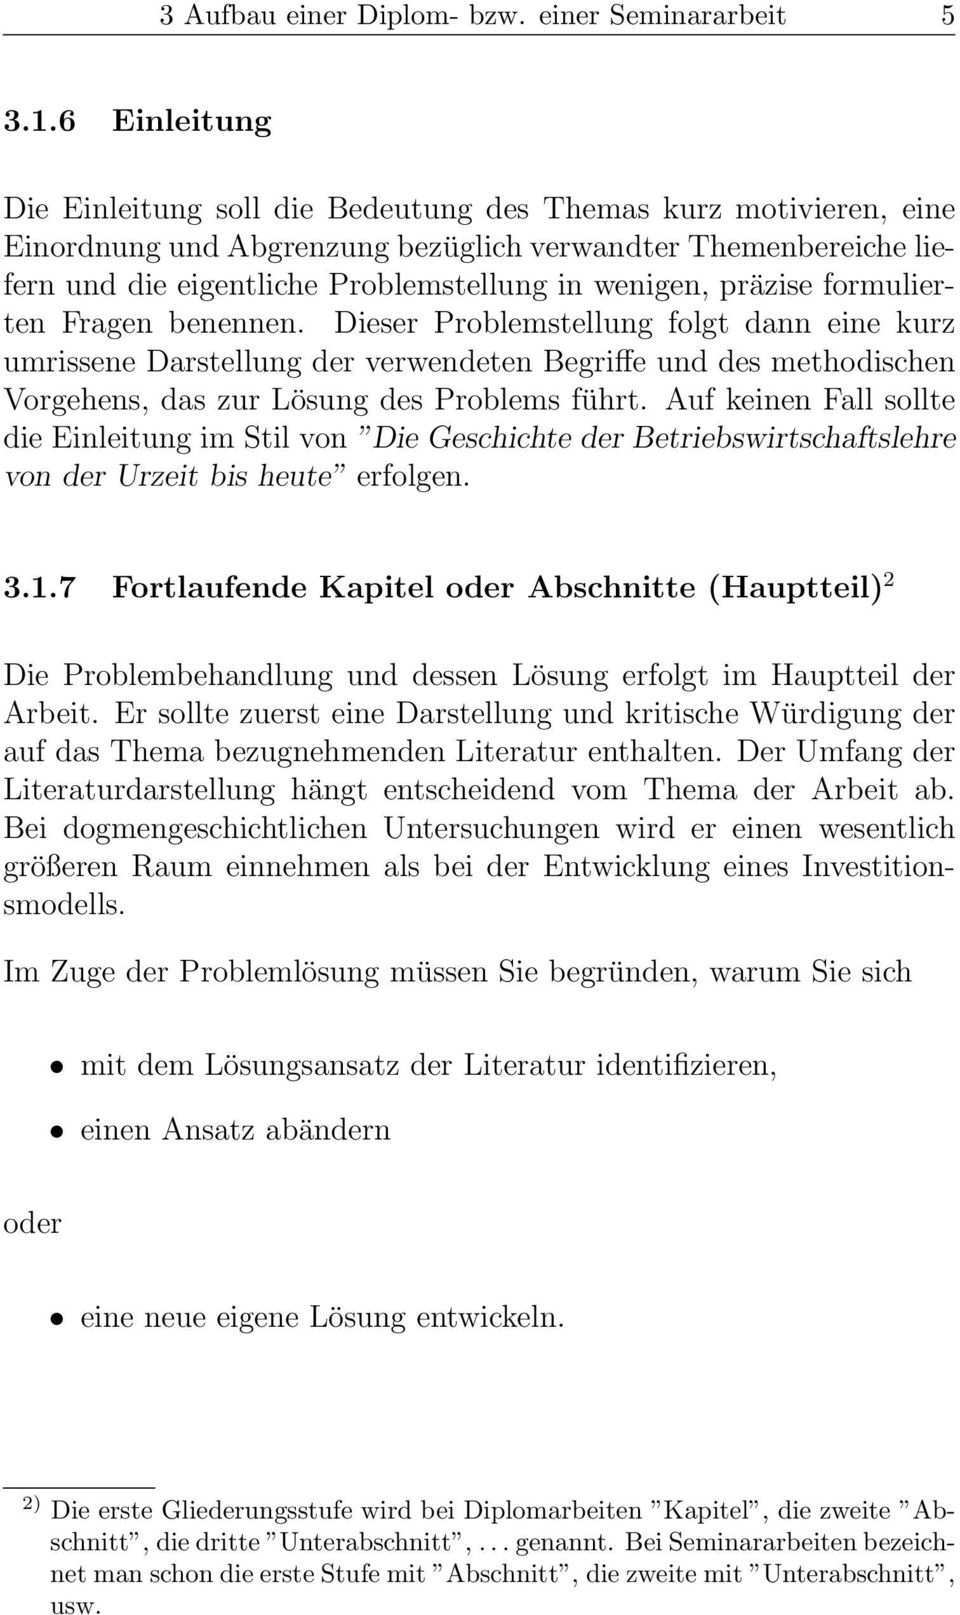 Leitfaden Diplom Und Seminararbeiten Pdf Free Download